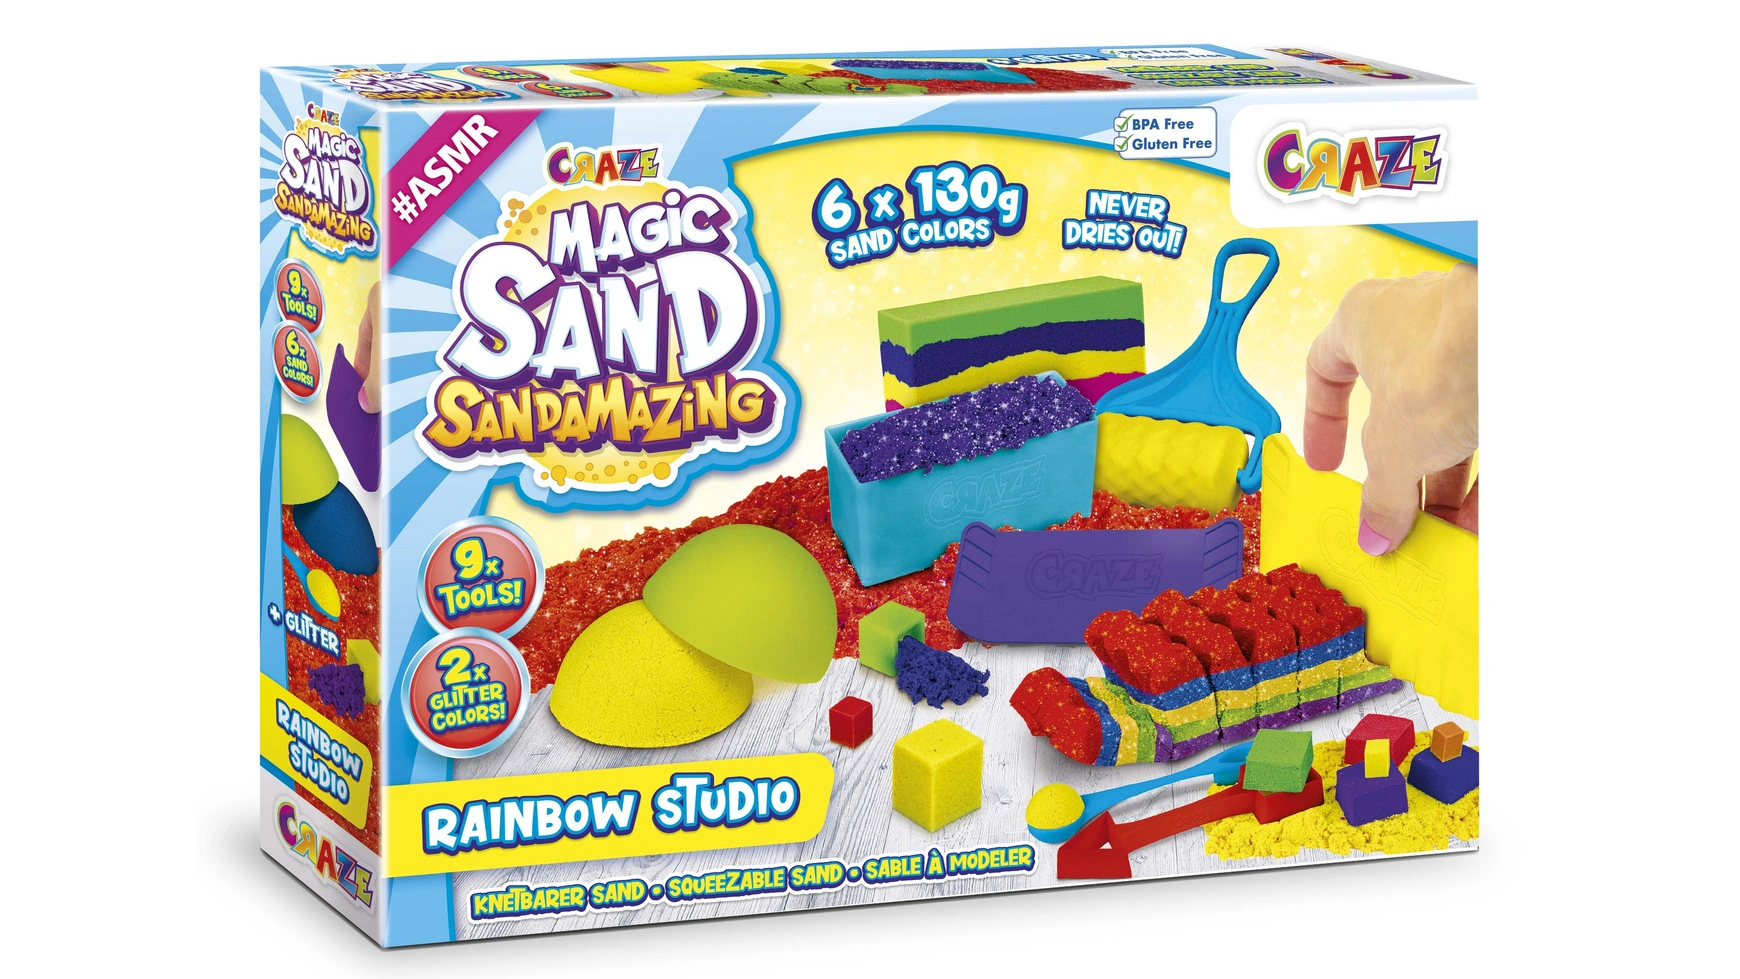 Craze Волшебный песок саундария Rainbow Studio craze волшебный песок саундария rainbow studio